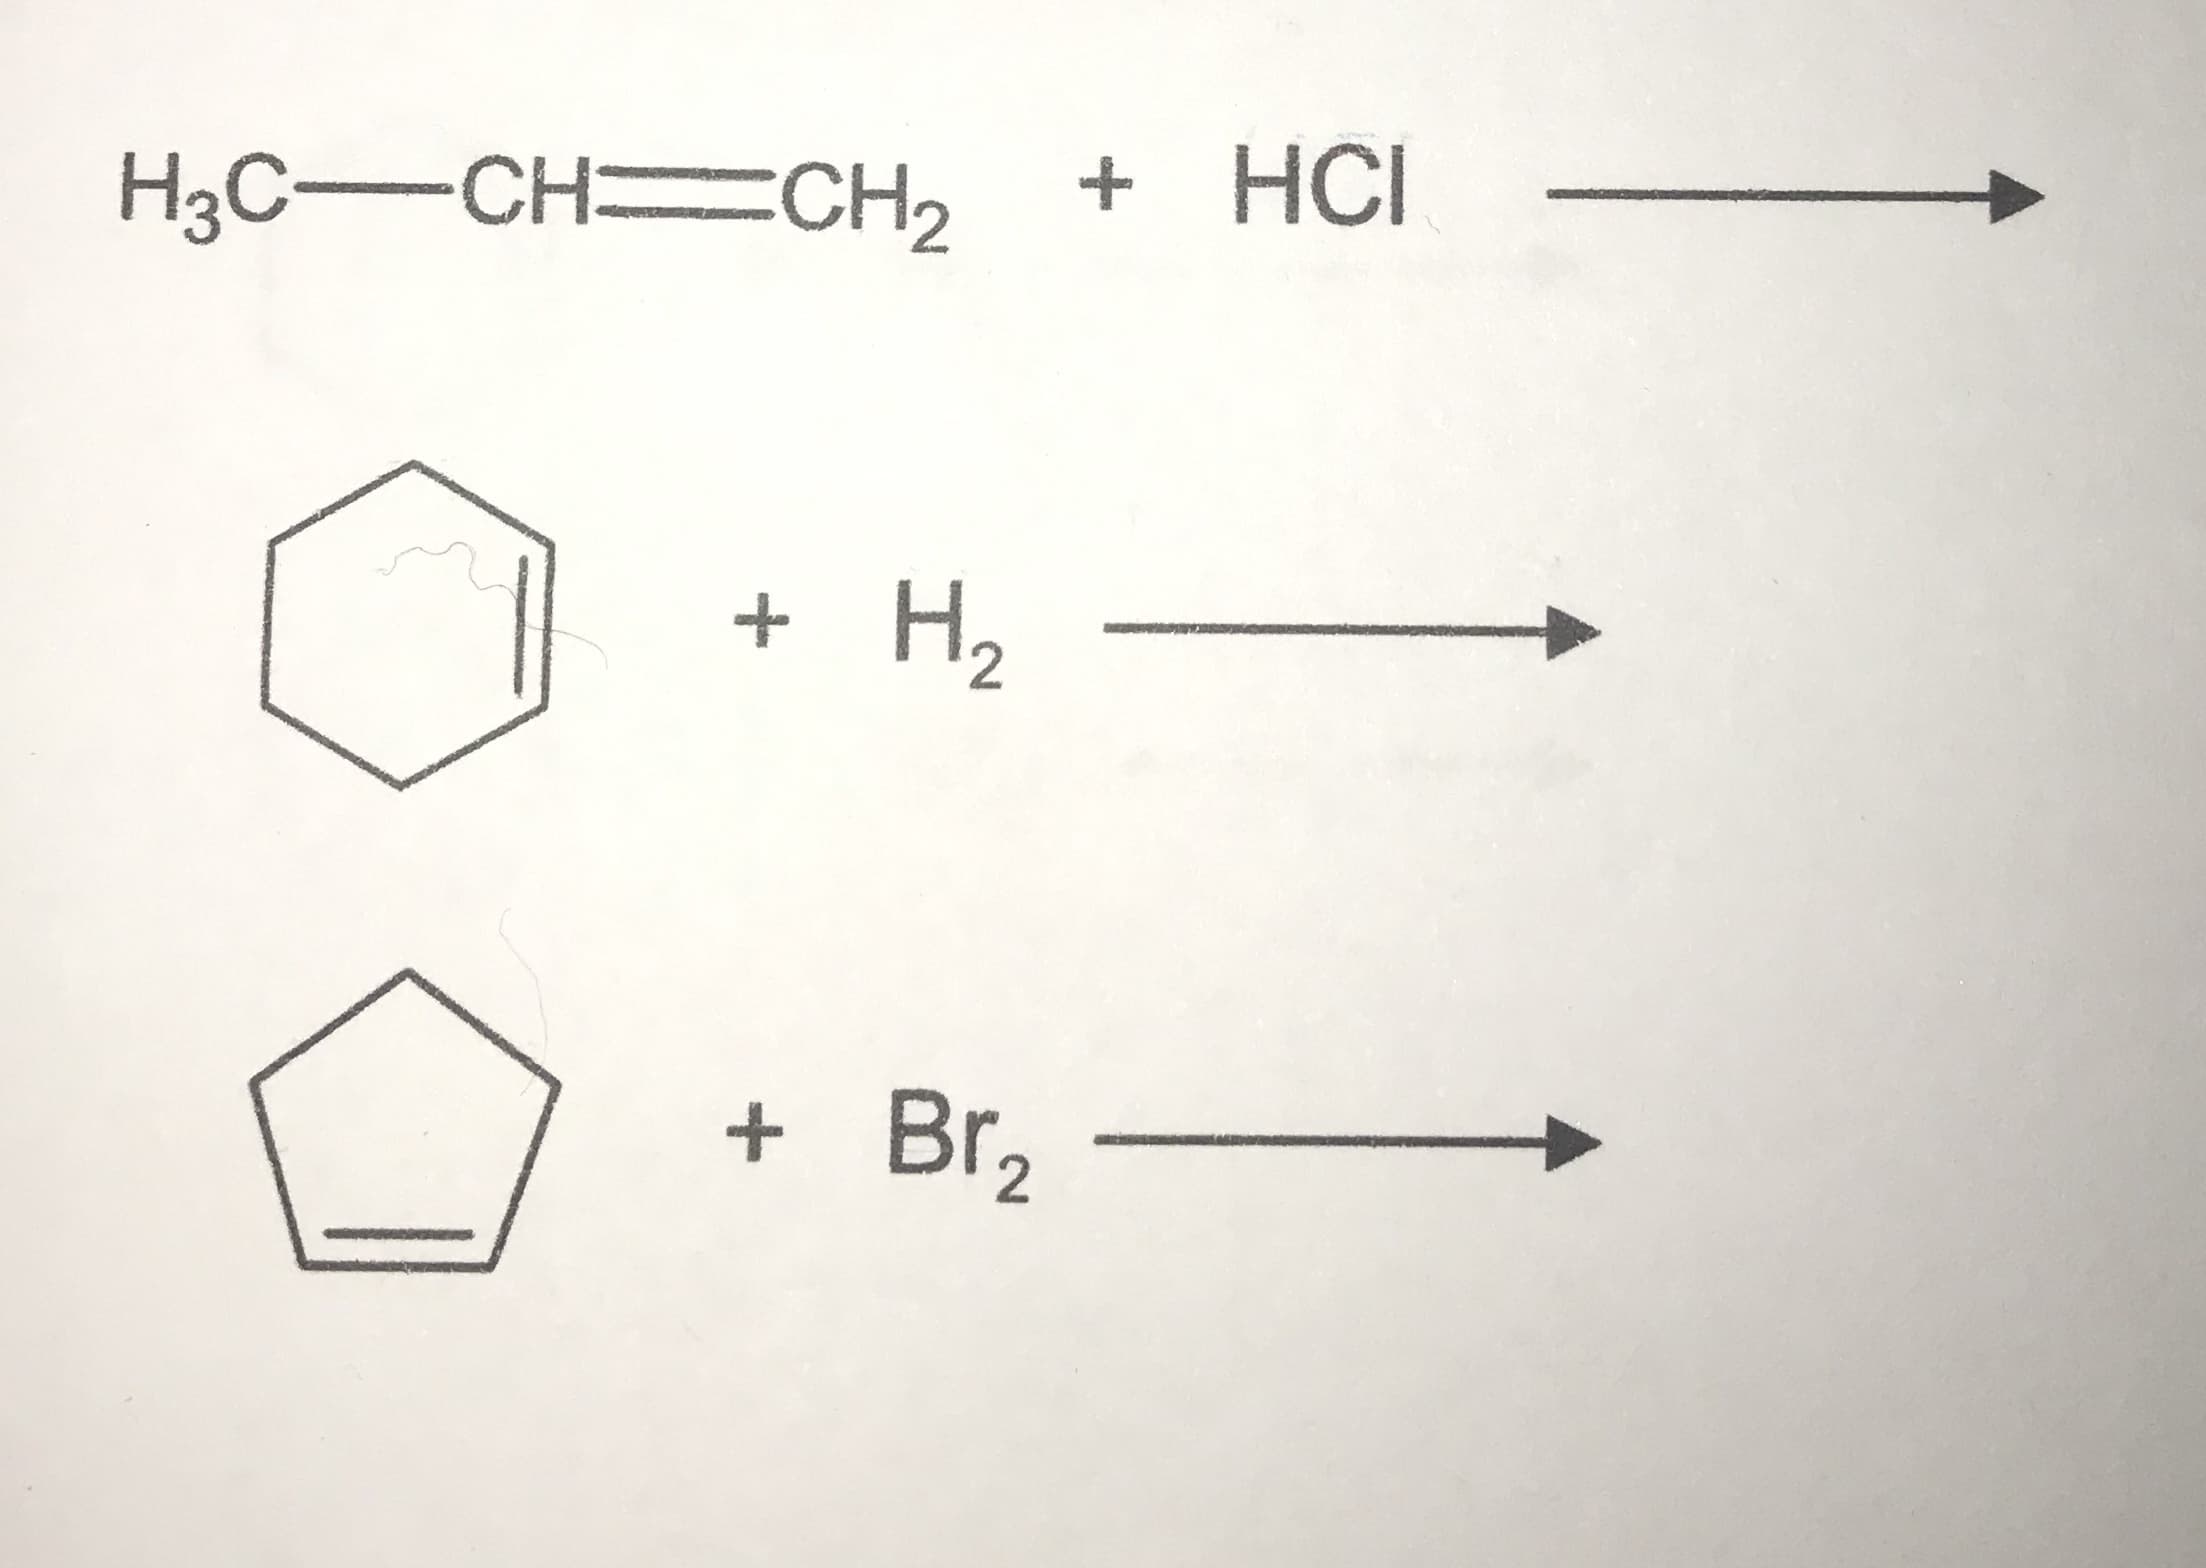 H3C-CH CH2
+ HCI
+ H2
+ Br,
